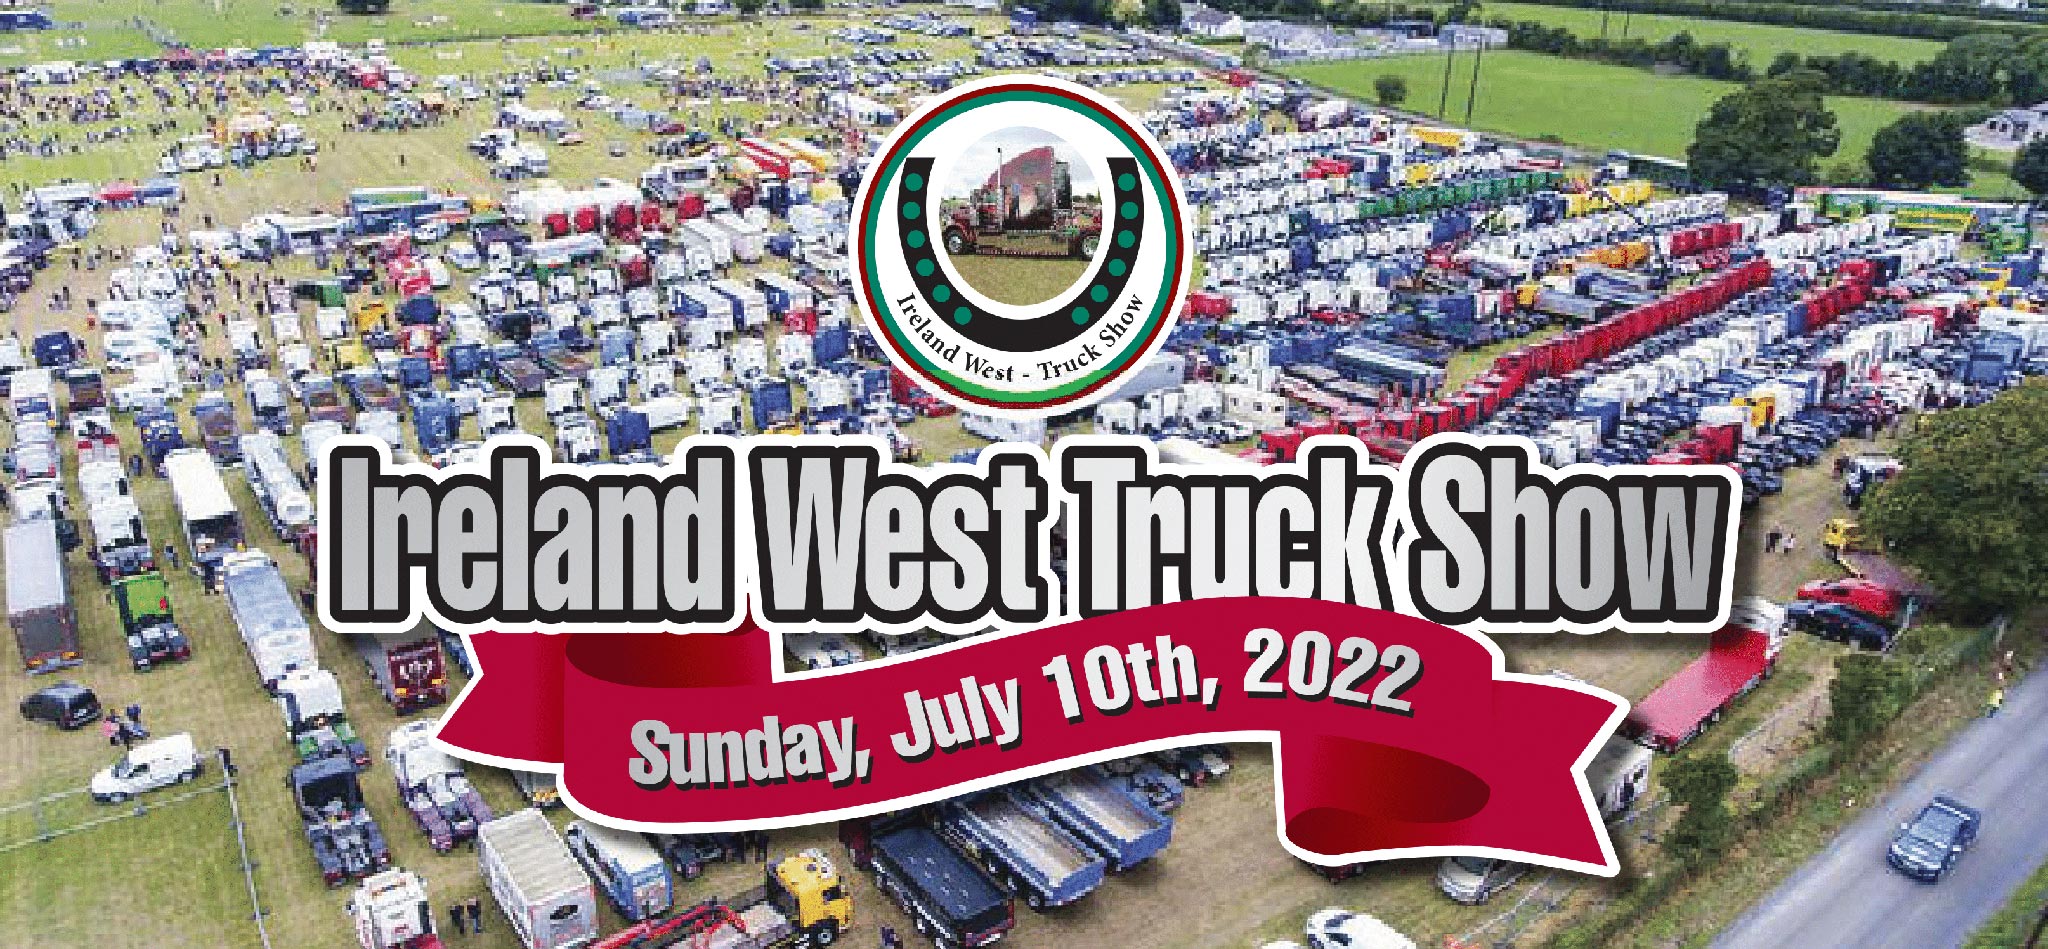 Ireland West Truck Show 2022